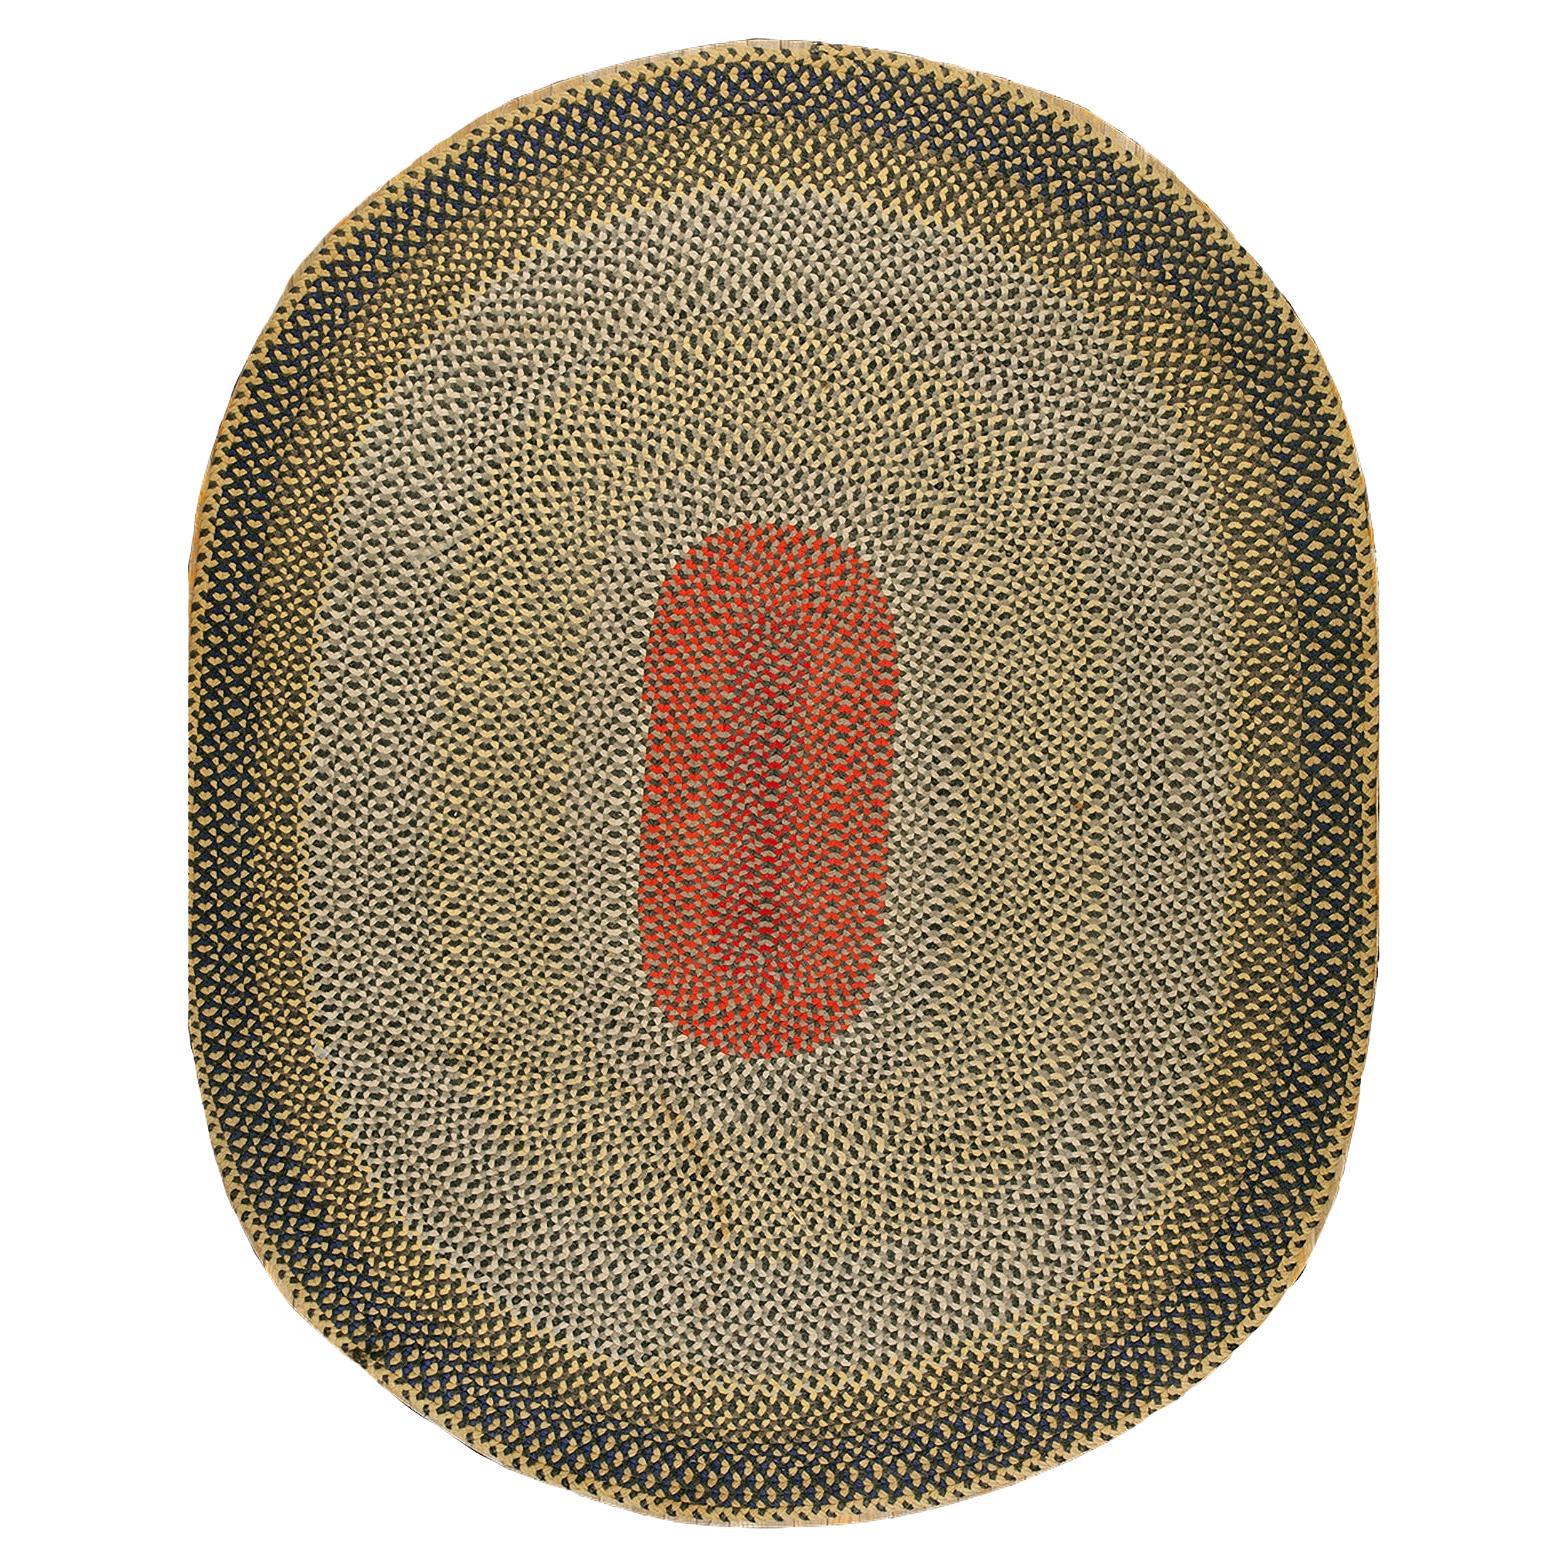 Amerikanischer geflochtener Teppich aus den 1940er Jahren ( 7' 6 Zoll x 9' 2 Zoll - 228 x 279 cm)